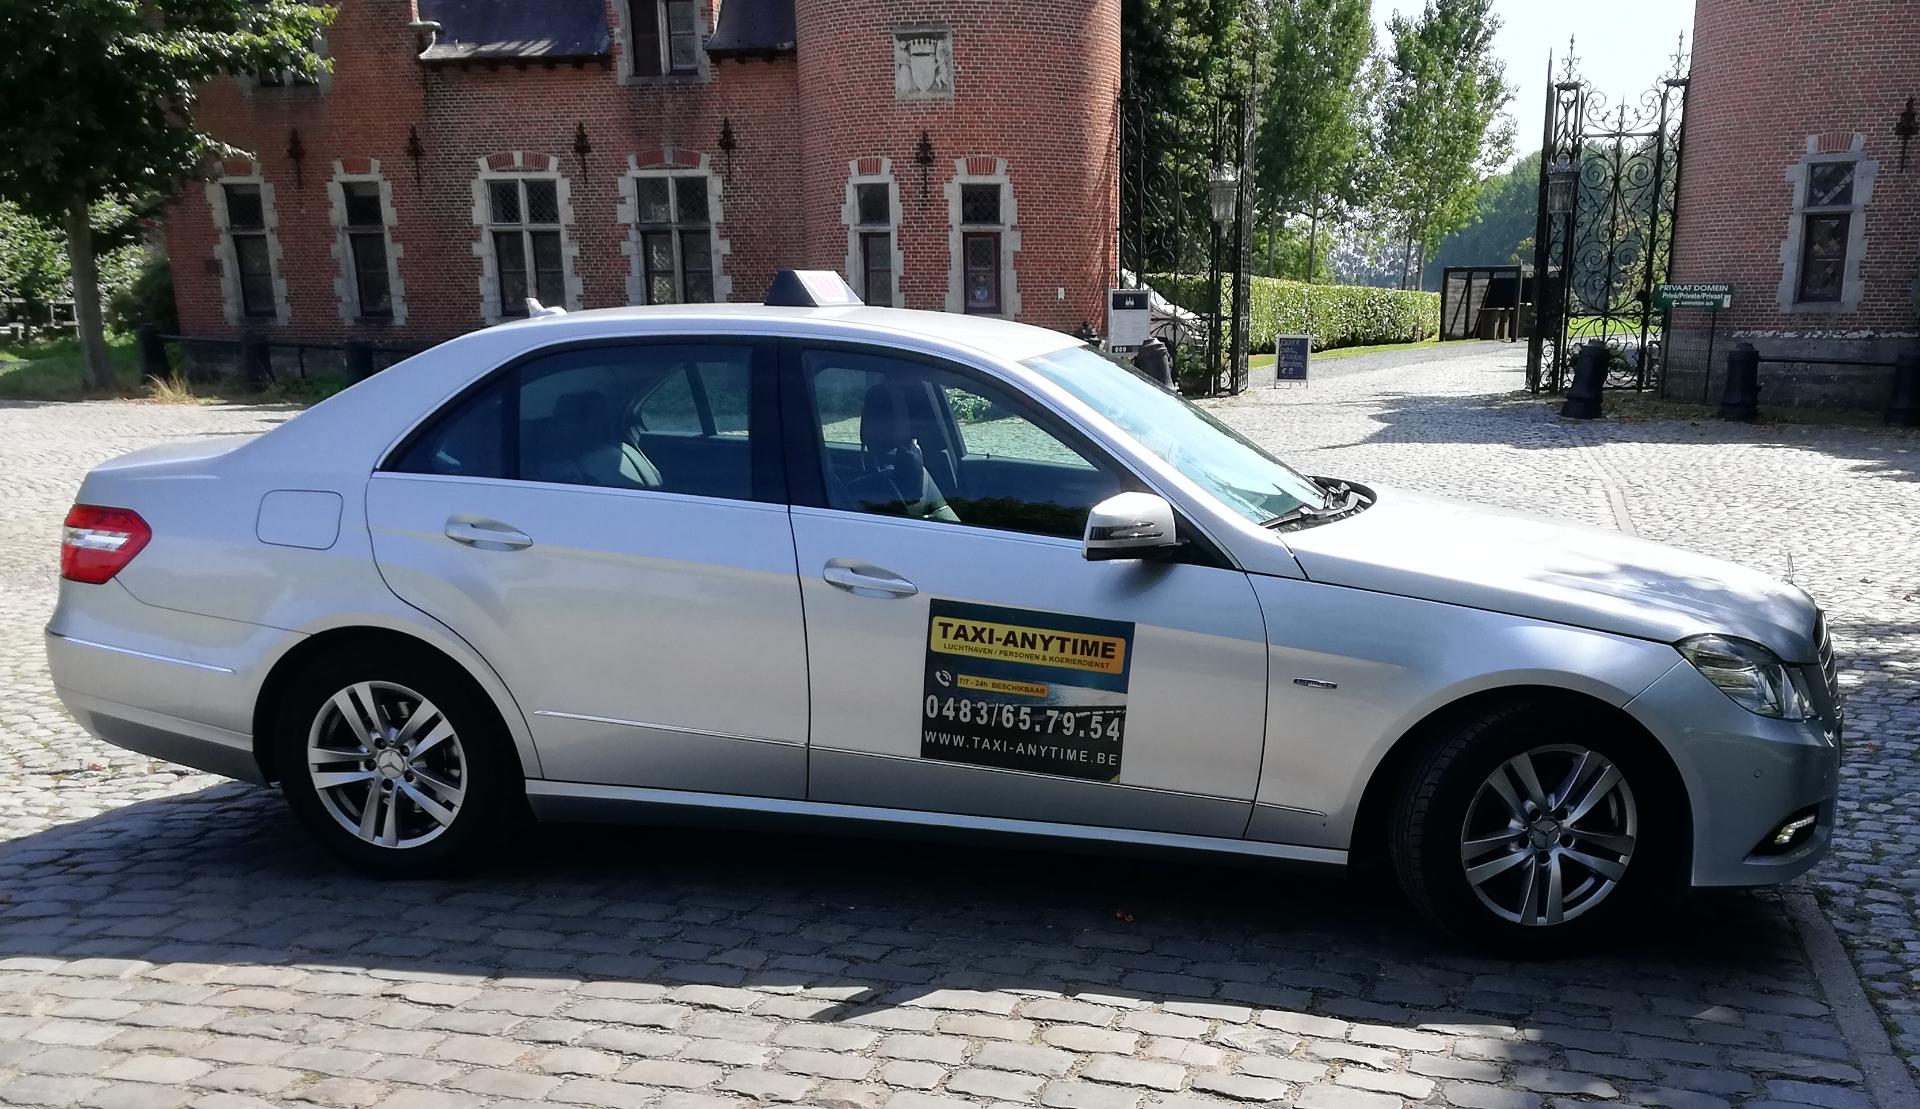 taxibedrijven met luchthavenvervoer Berchem Taxi Anytime